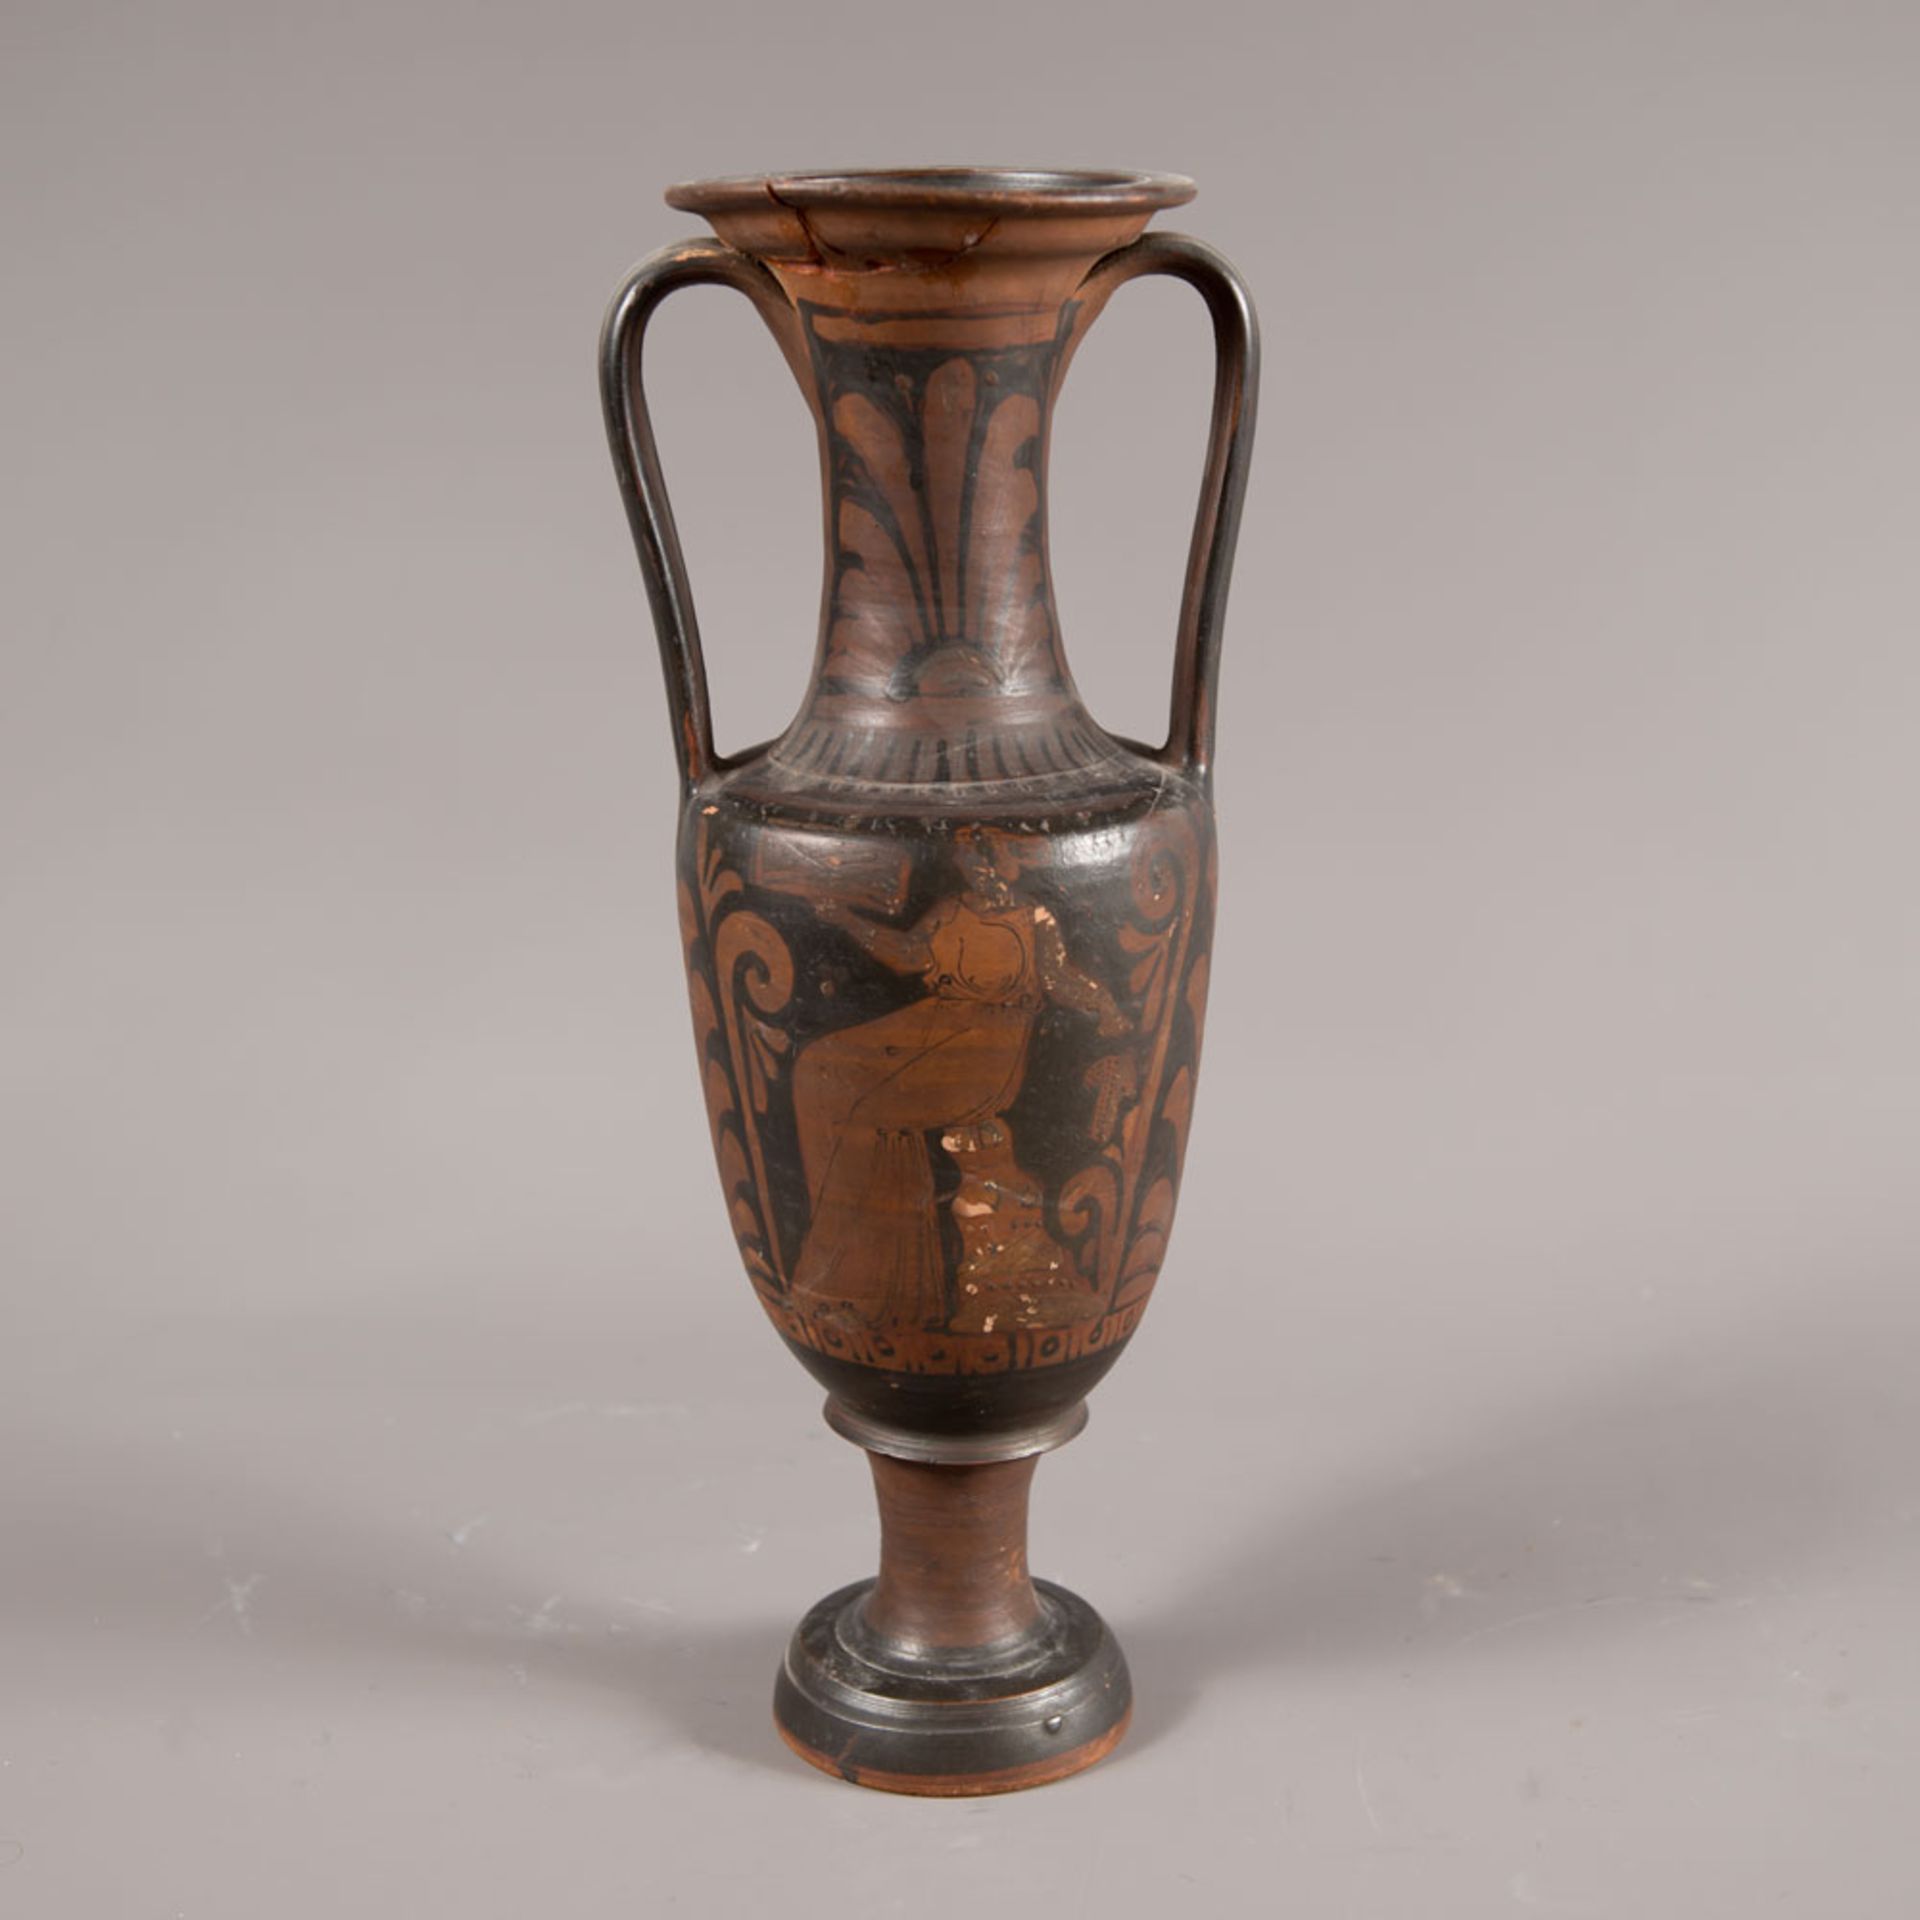 Apulian ancient ceramic vase - Image 3 of 3